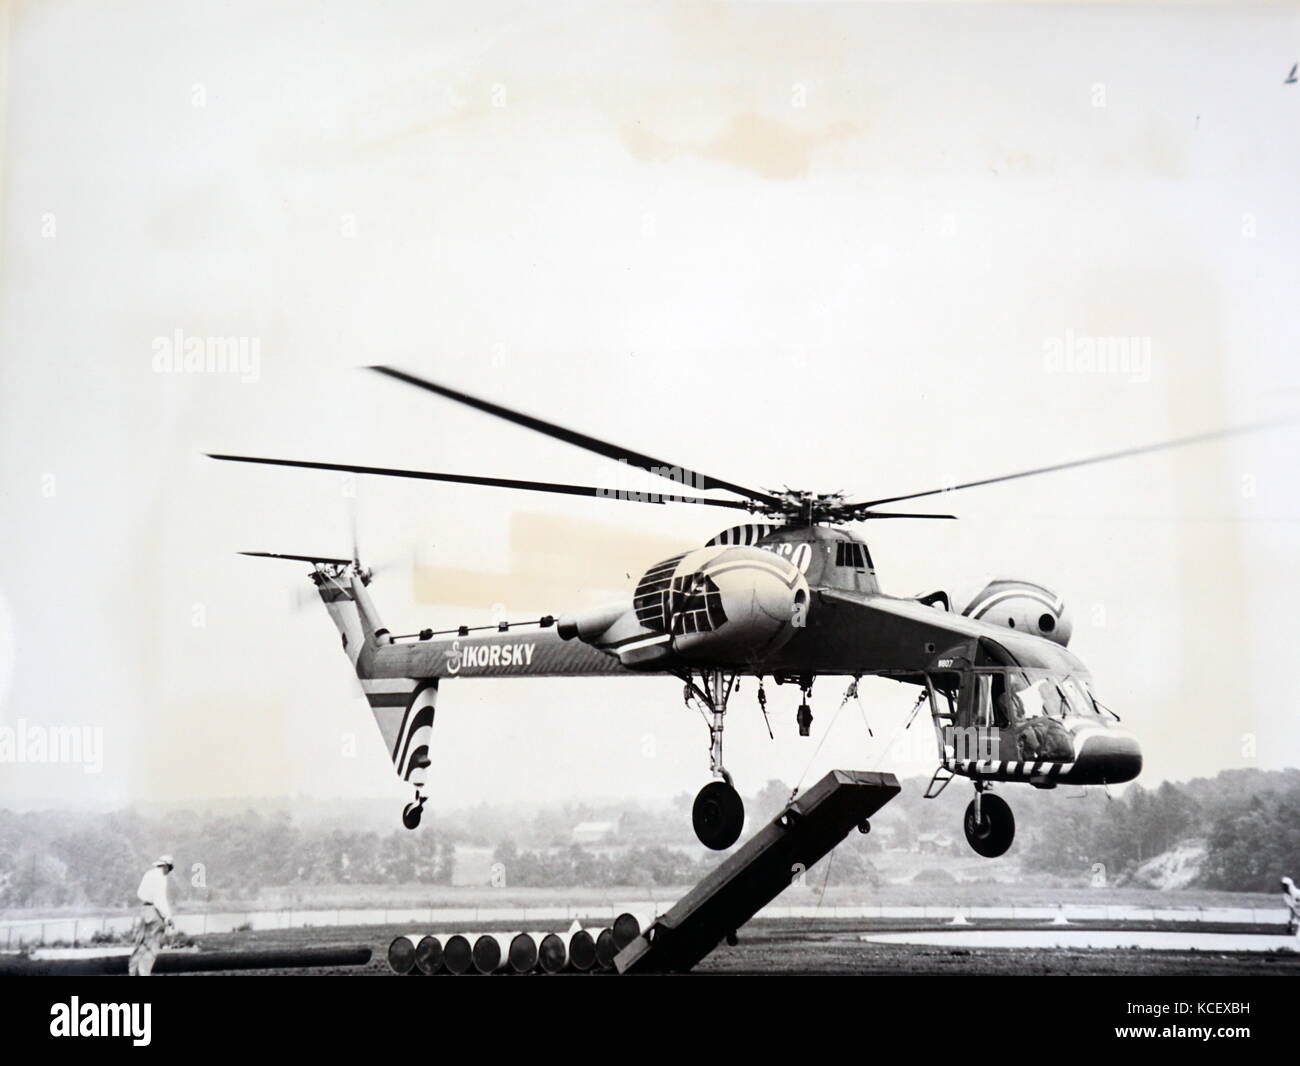 Fotografía de un Sikorsky S-64 Skycrane, un americano bimotor de helicópteros para carga pesada. Fecha Siglo XX Foto de stock